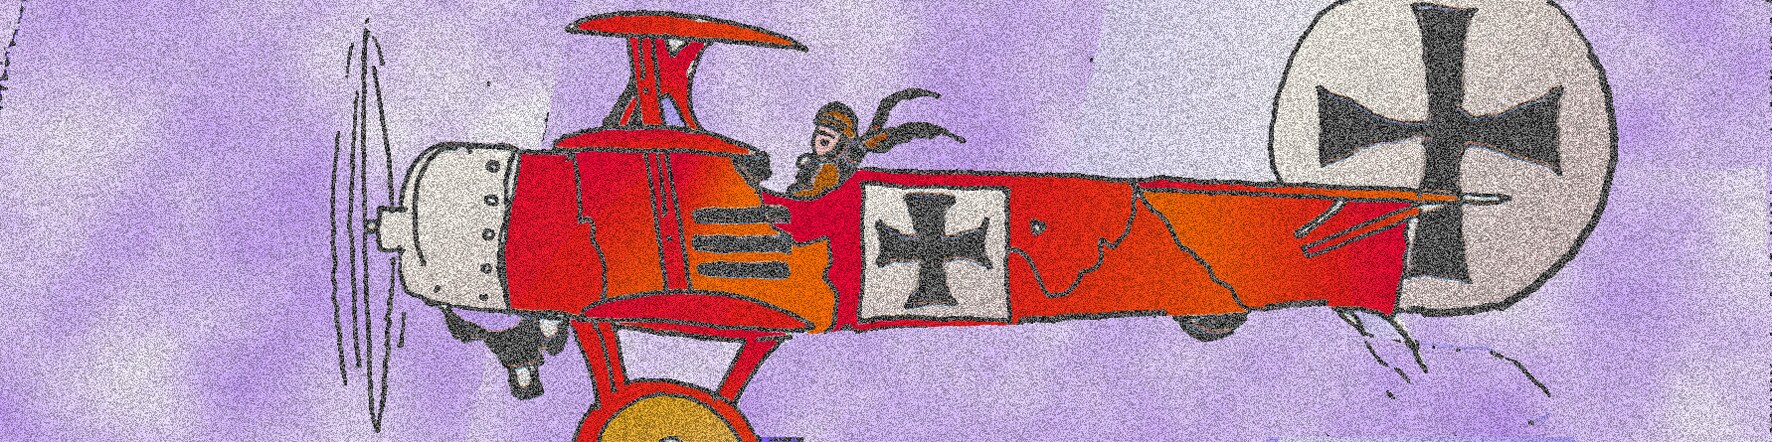 Immagine dell'aereo del Barone Rosso (Per leggerne la descrizione proseguire nel link). L'aereo dell'asso dell'aviazione tedesca tra le nuvole, con le insegne della croce di ferro.